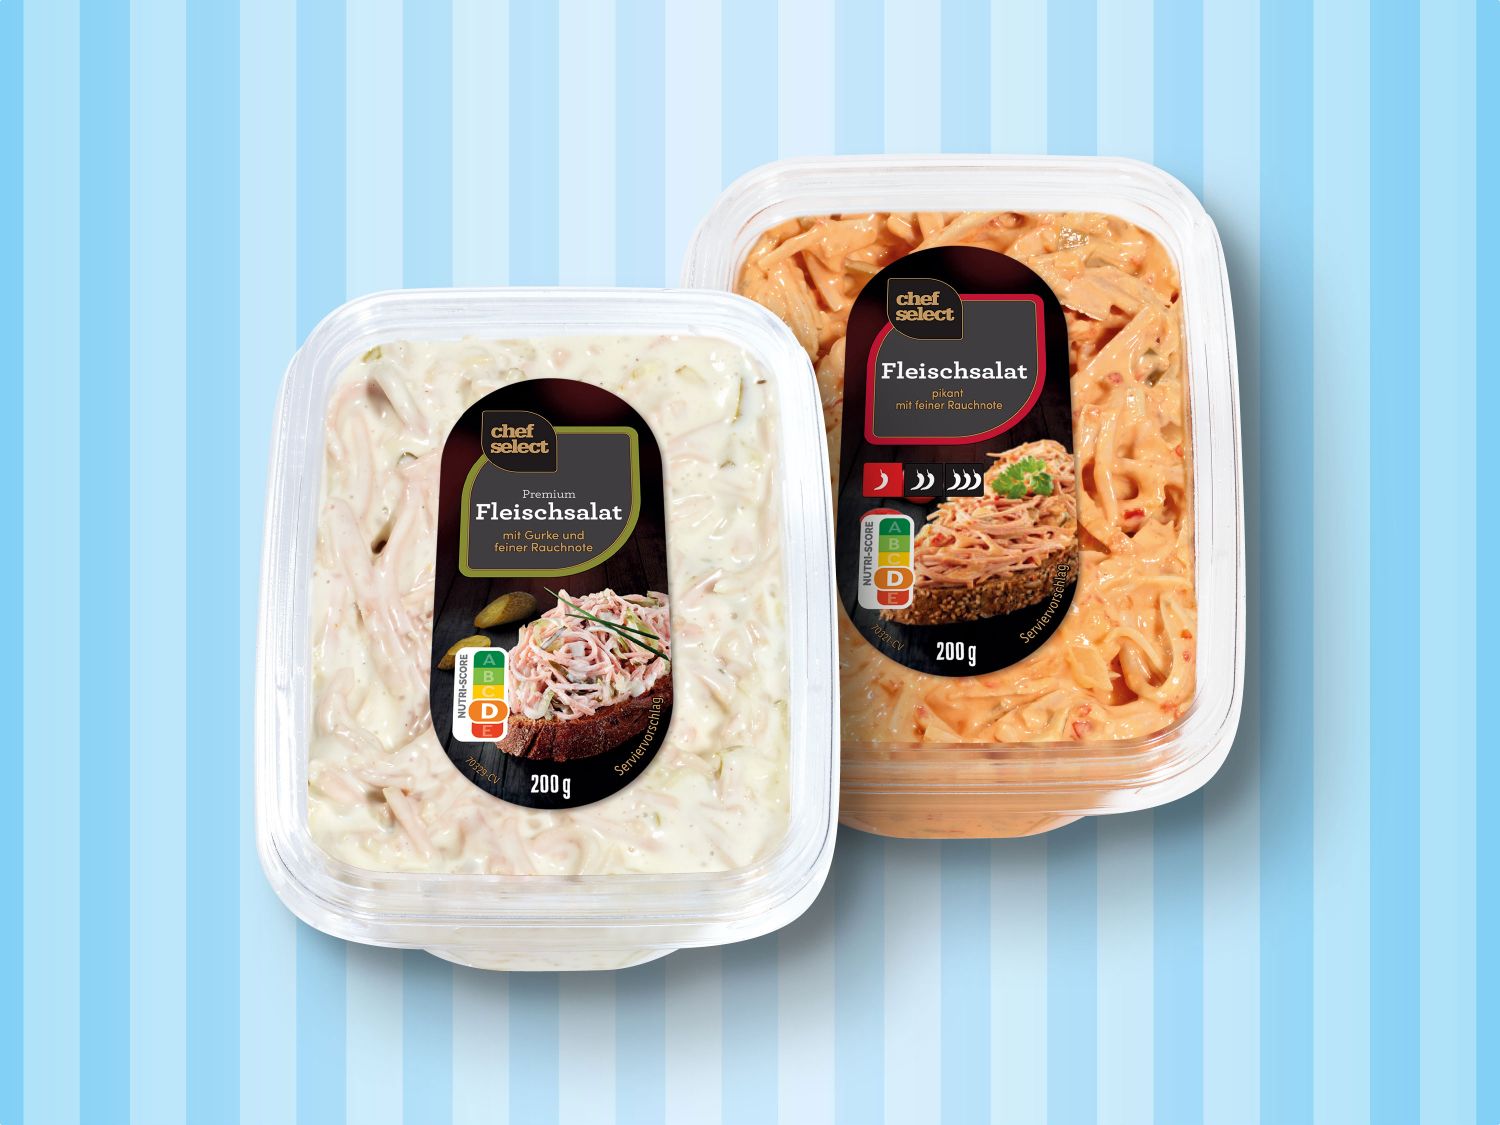 Chef Select Premium Fleischsalat - Lidl Deutschland